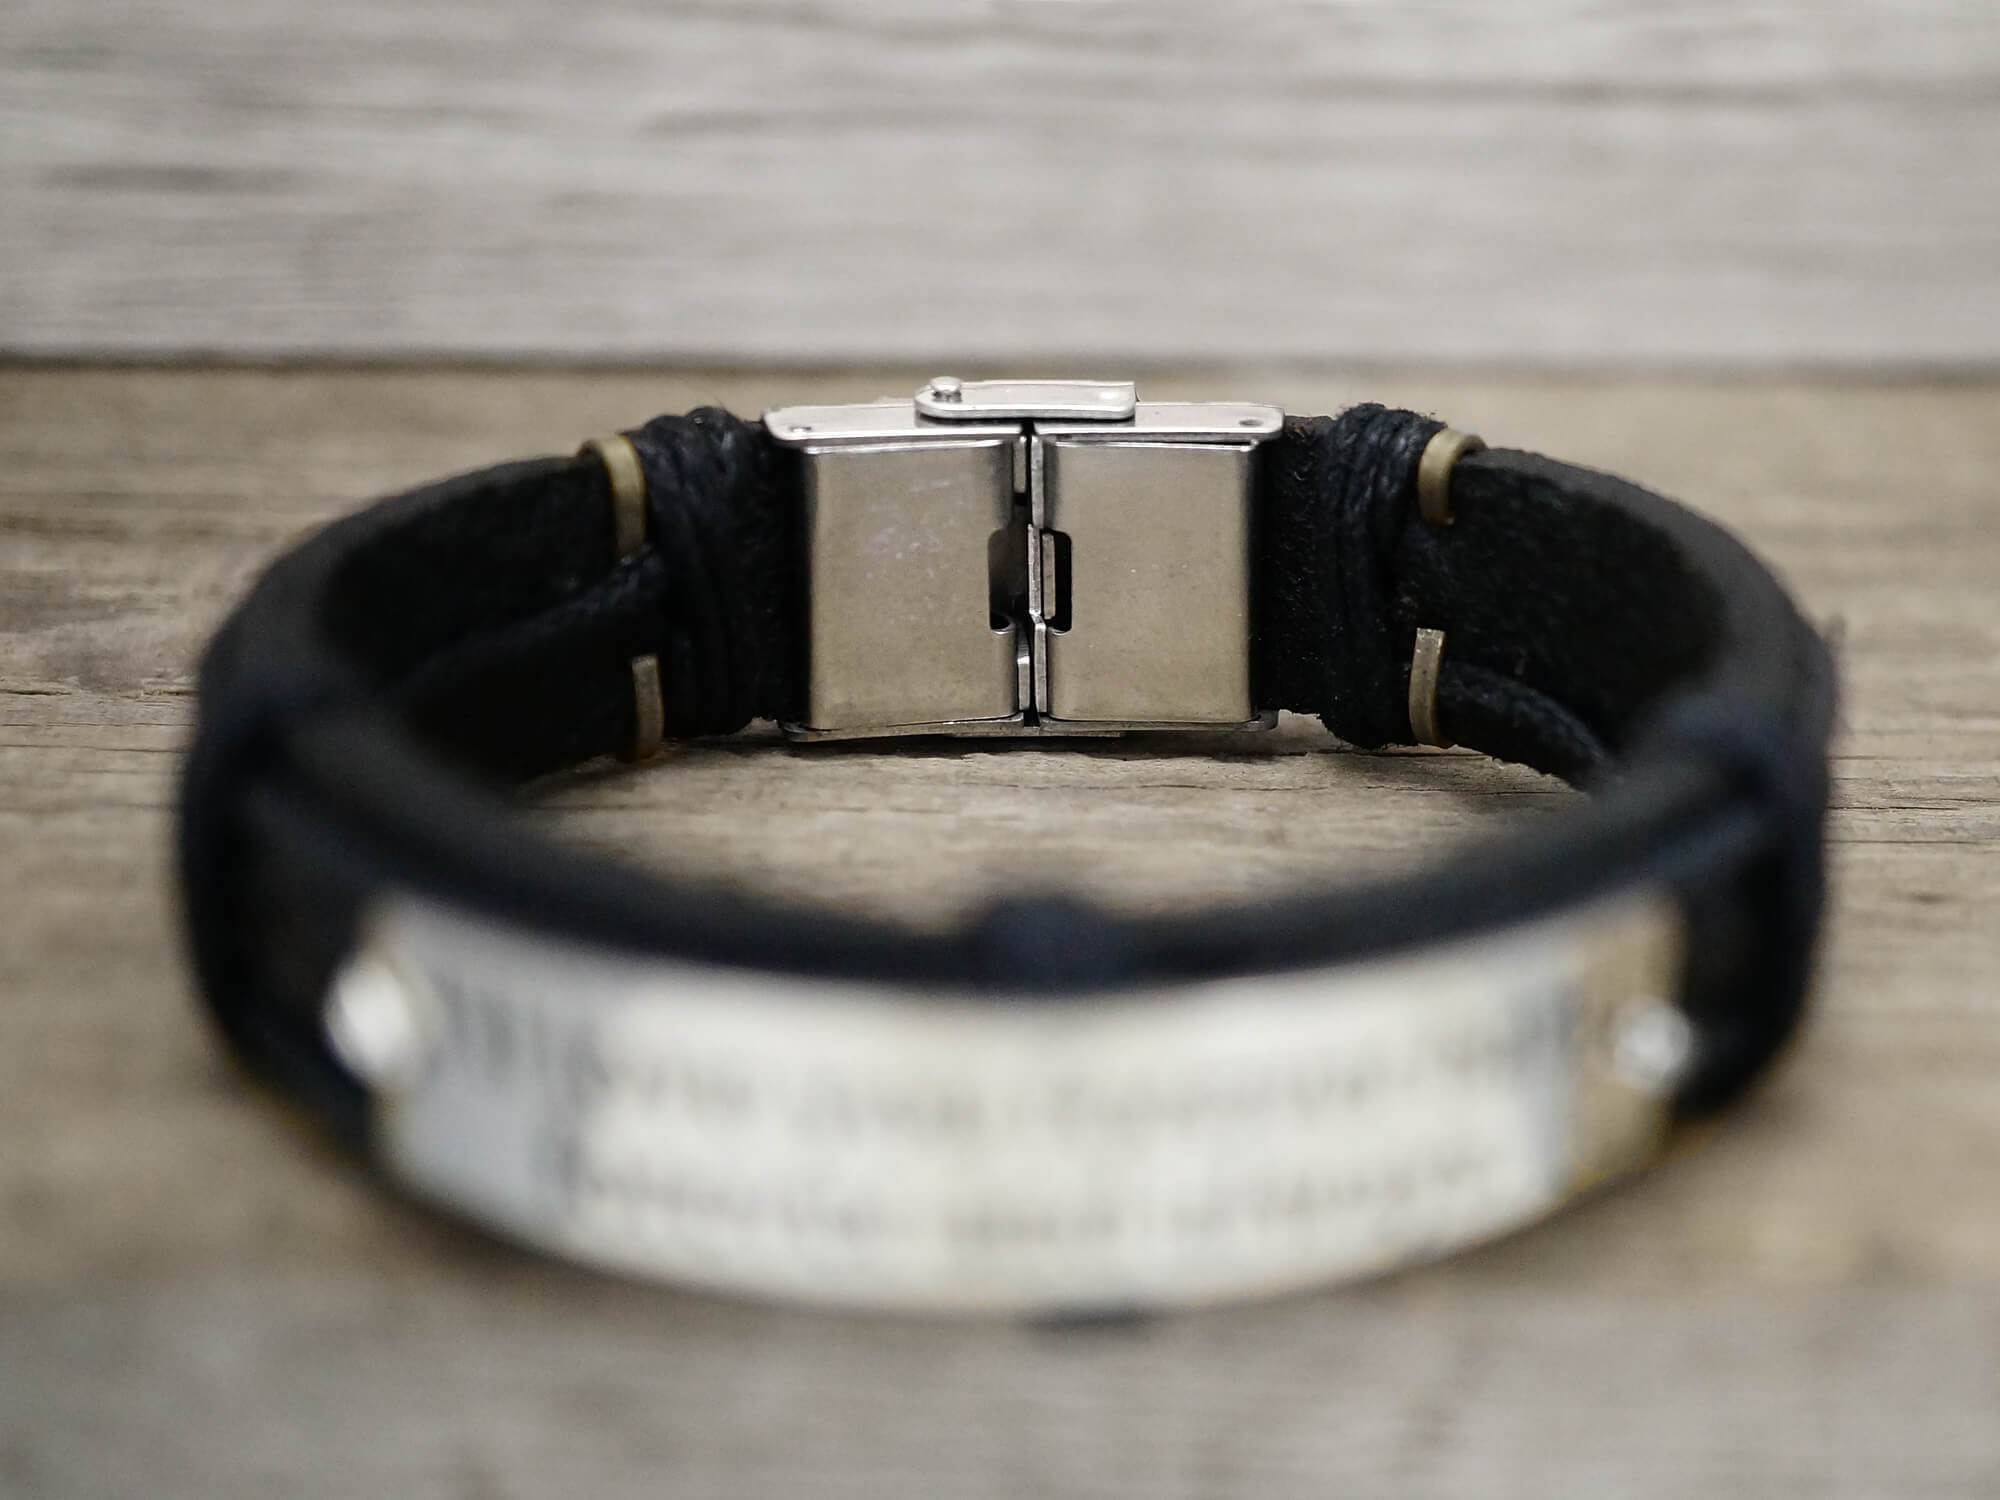 Men's Secret Message Leather Bracelet  Bracelets for boyfriend, Custom leather  bracelets, Leather bracelet